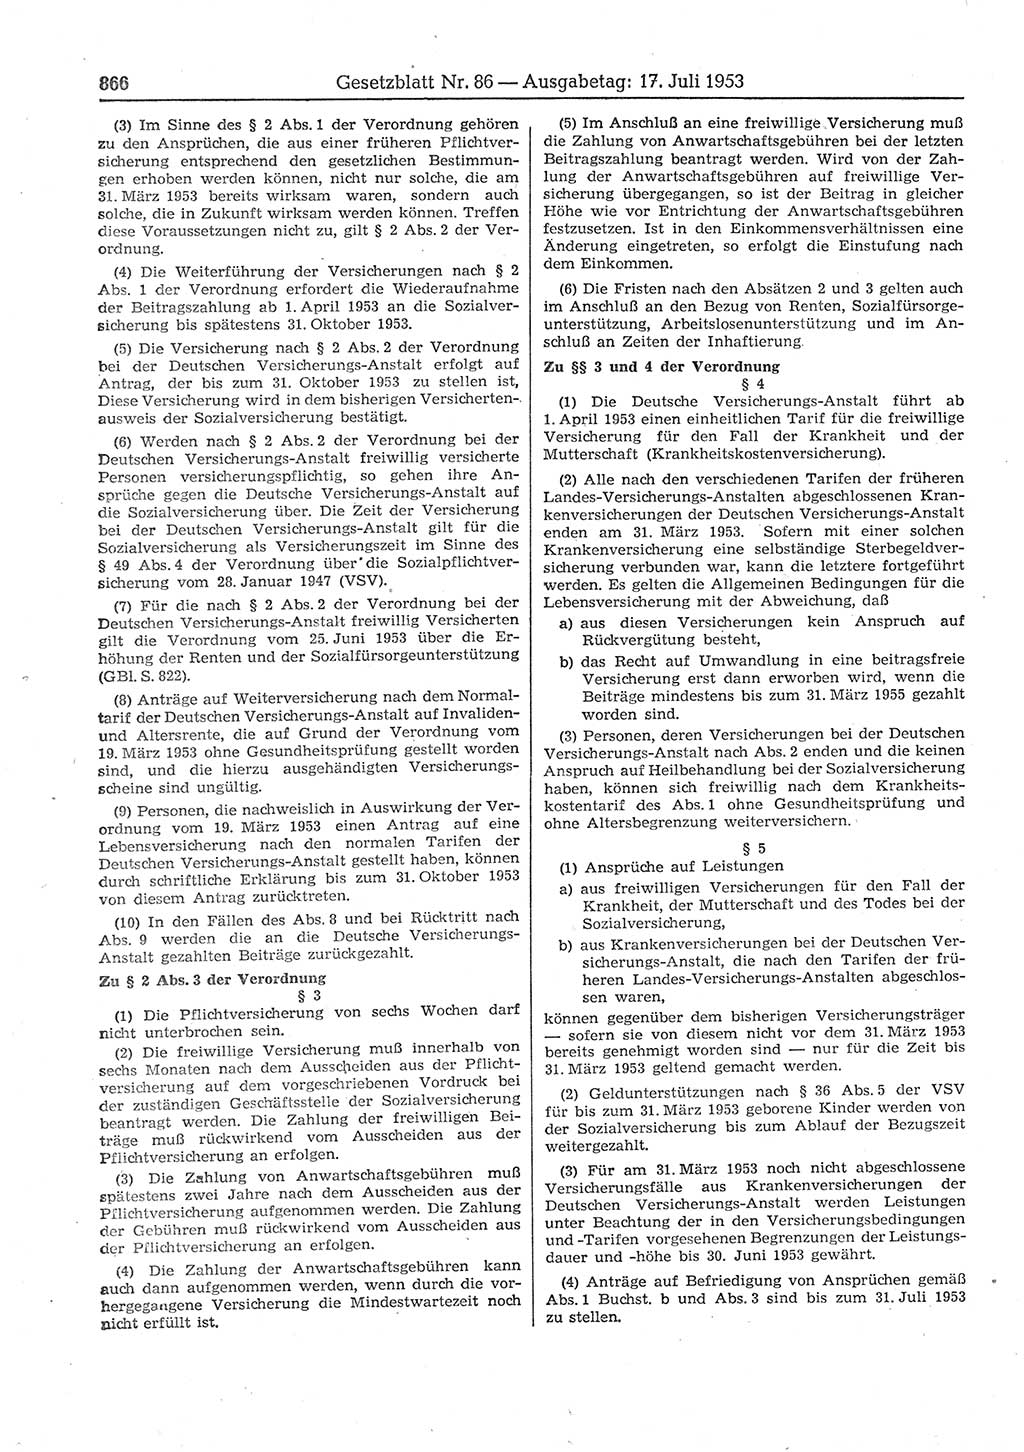 Gesetzblatt (GBl.) der Deutschen Demokratischen Republik (DDR) 1953, Seite 866 (GBl. DDR 1953, S. 866)